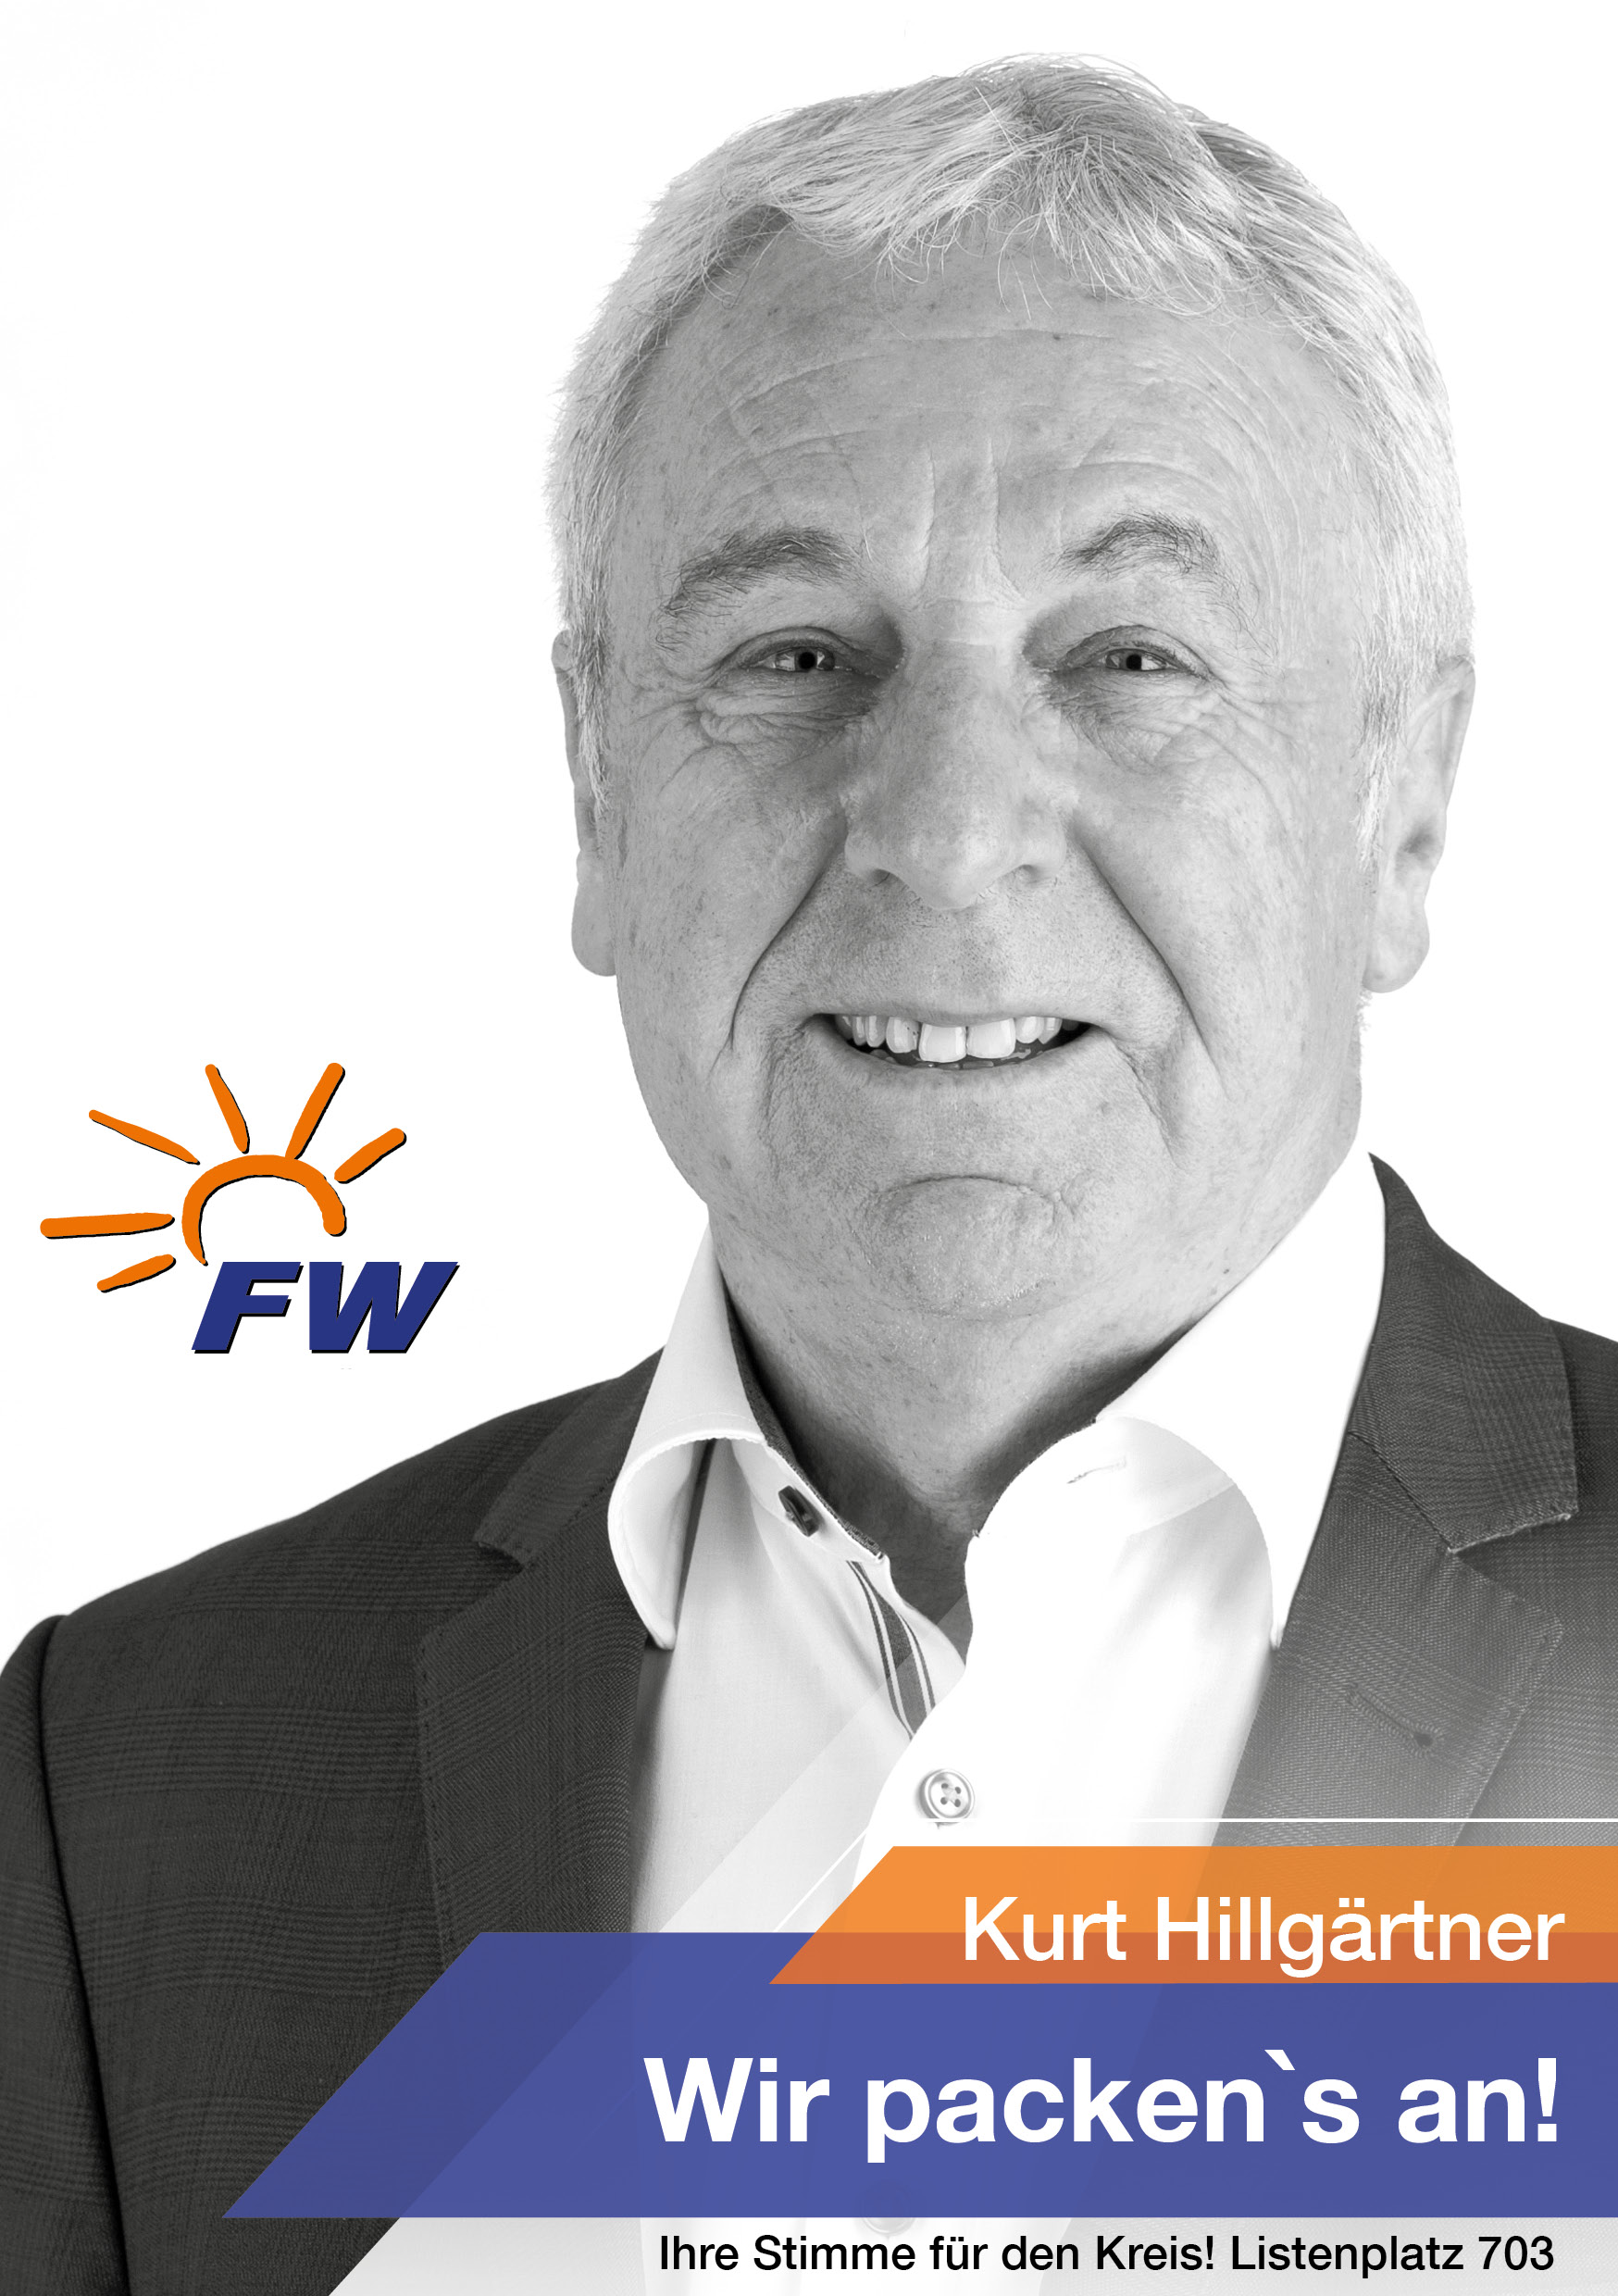 Kurt Hillgärtner